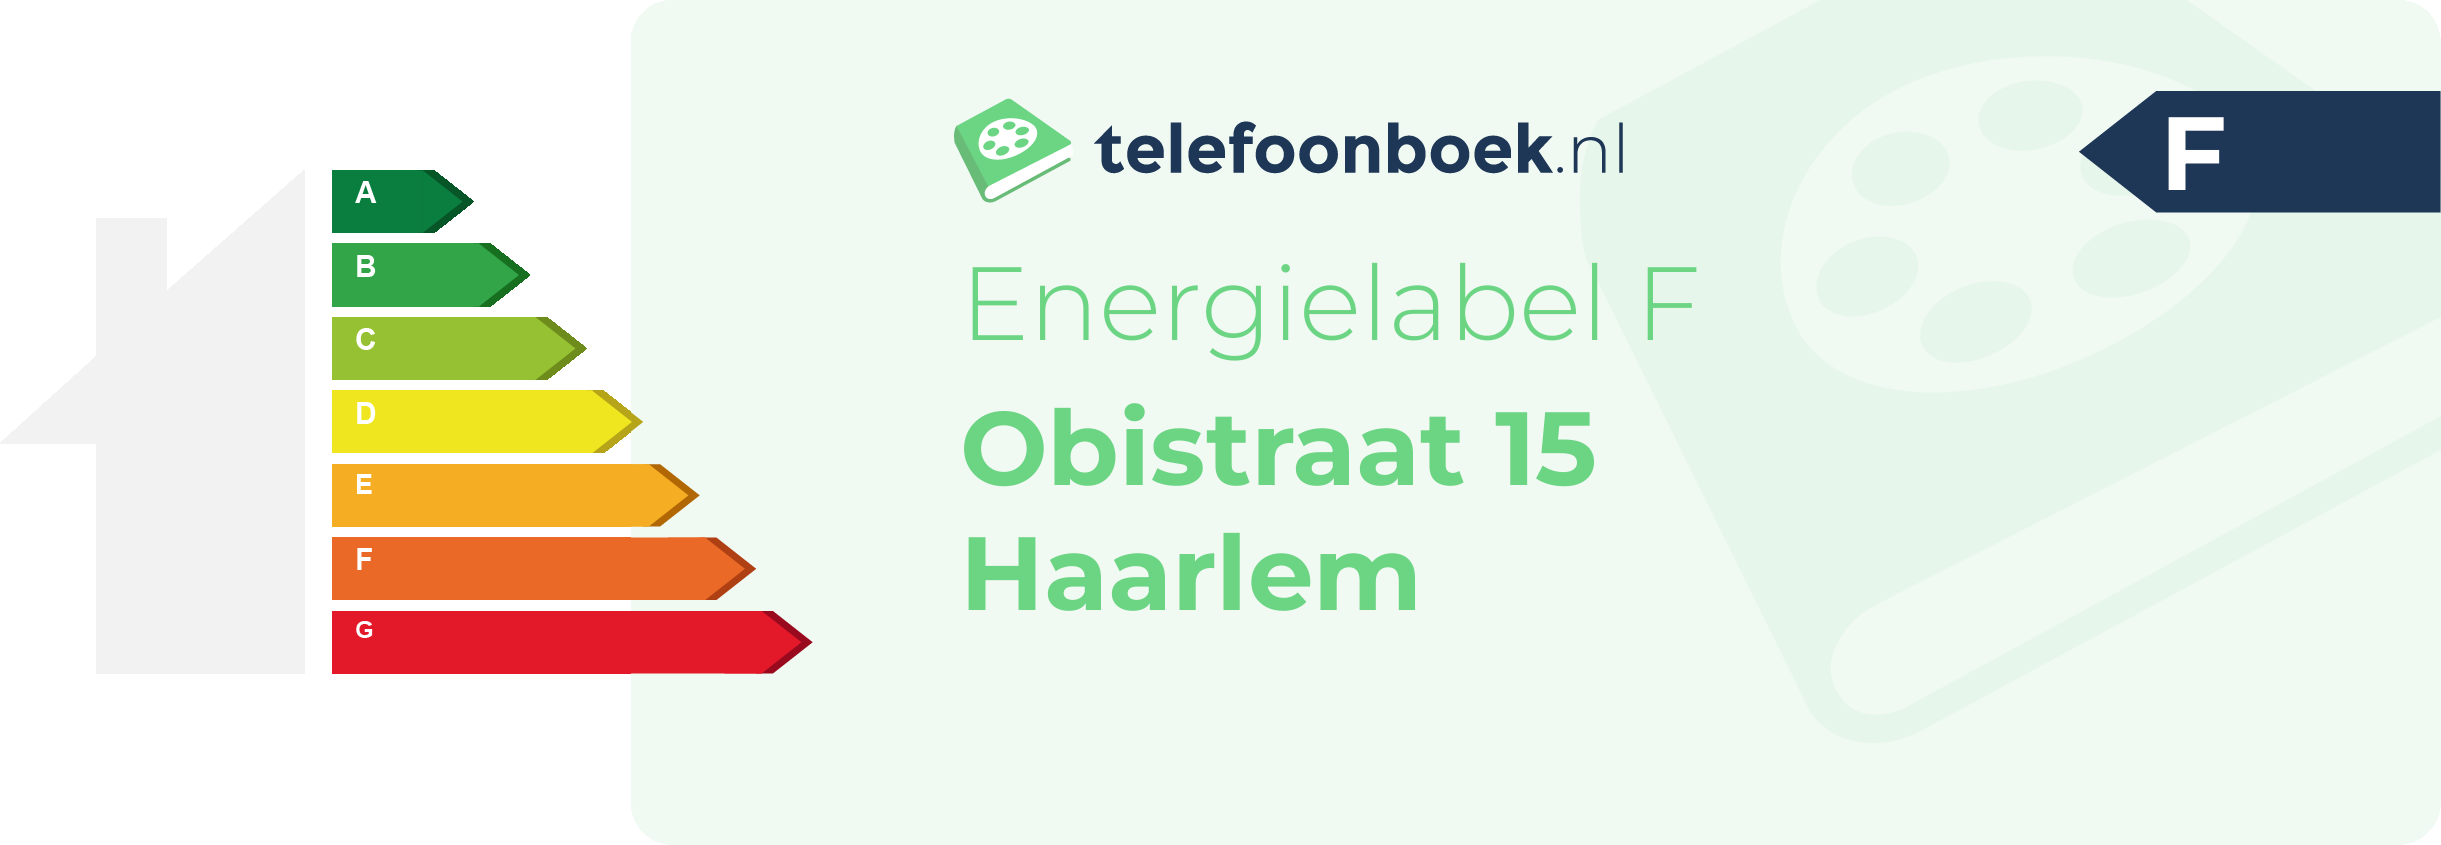 Energielabel Obistraat 15 Haarlem